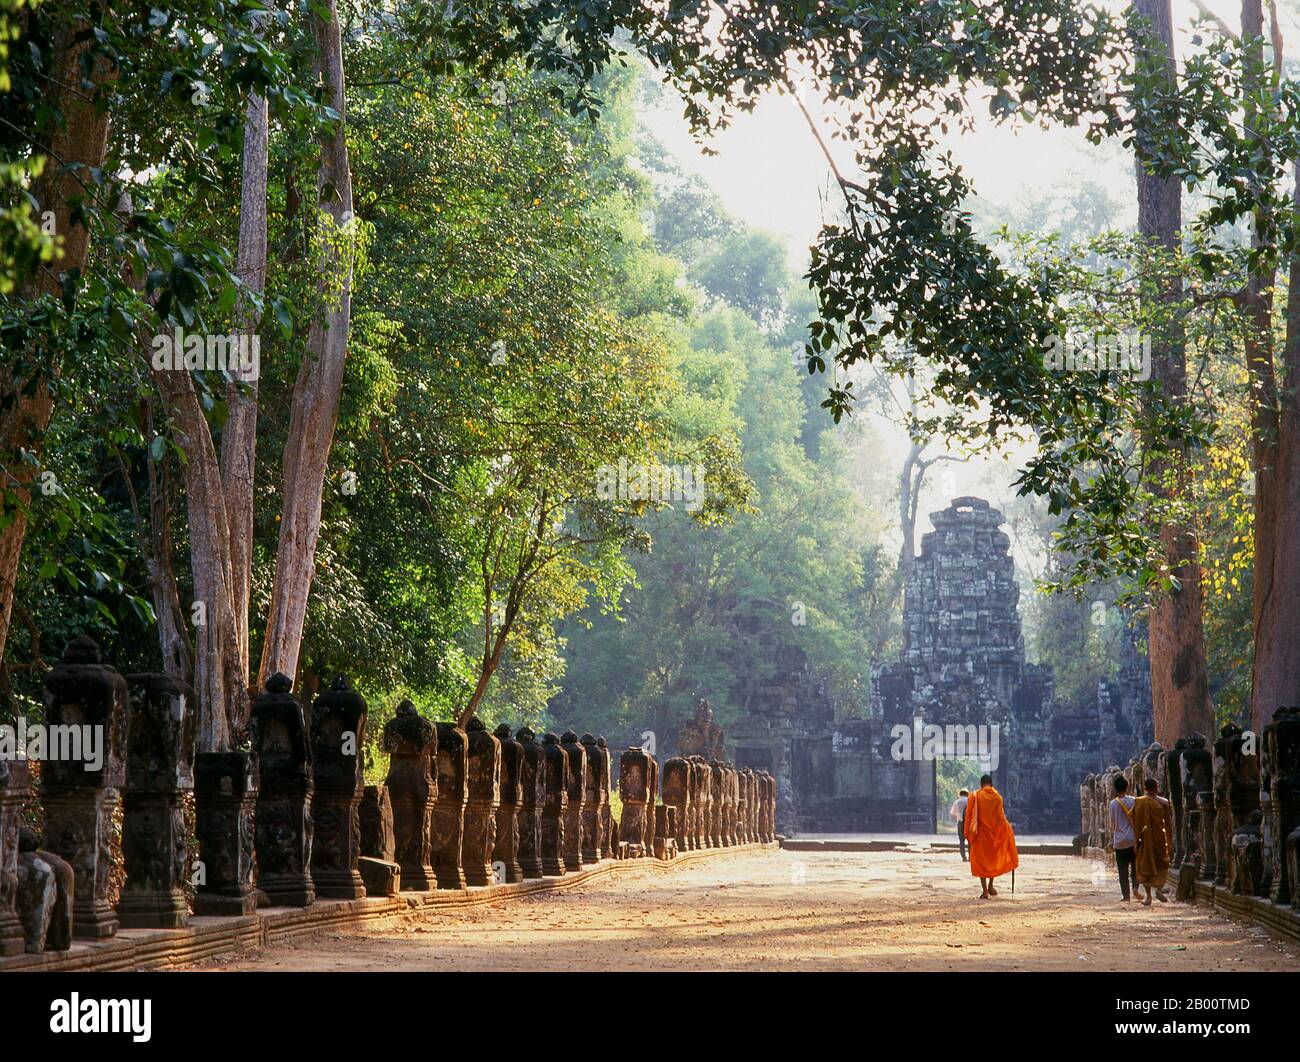 Cambogia: Un monaco cammina verso la gopura occidentale, Preah Khan, Angkor. Preah Khan (Tempio della Spada Sacra) è stato costruito nel tardo 12 ° secolo (1191) da Jayavarman VII e si trova appena a nord di Angkor Thom. Il tempio fu costruito sul luogo della vittoria di Jayavarman VII sui Cham invasori nel 1191. Era il centro di un'organizzazione consistente, con quasi 100,000 funzionari e funzionari. Fu un'università buddista alla volta. La divinità primaria del tempio è il boddhisatva Avalokiteshvara sotto forma di padre di Jayavarman. Foto Stock